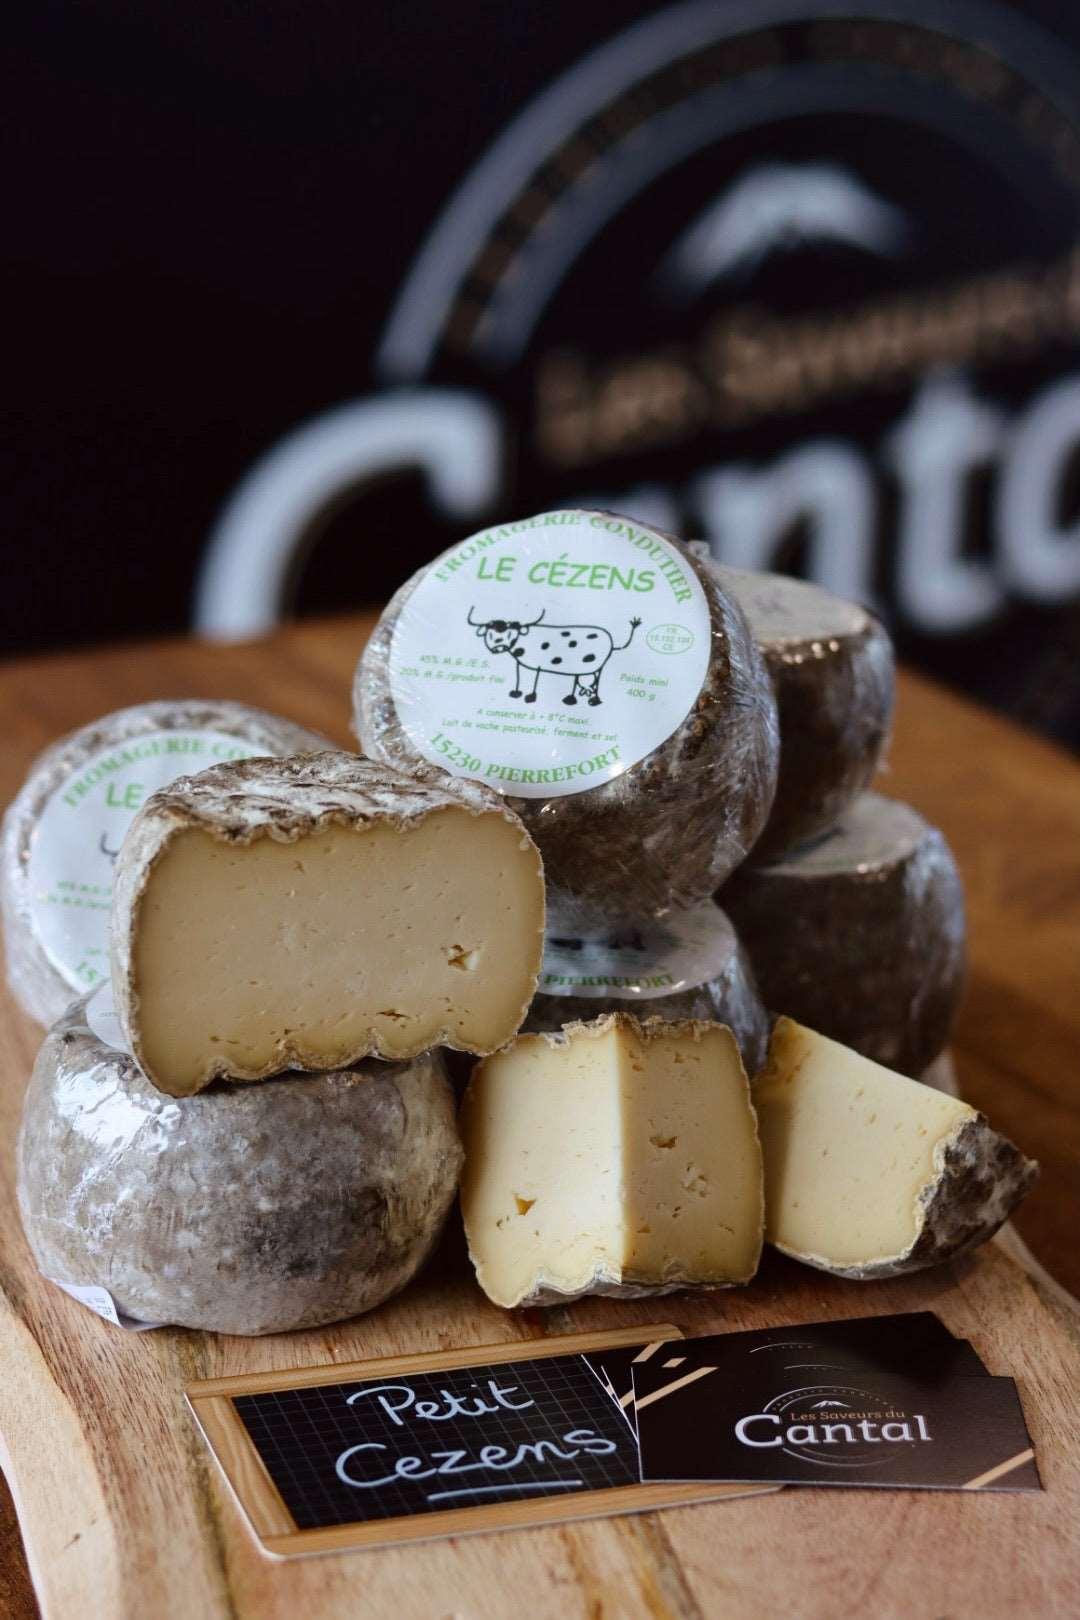 Le Petit Cézens est un fromage au lait de vache, fabriqué dans la région du Cantal en France. Sa croûte naturelle et sa pâte souple cachent des arômes de noisette et une saveur lactée douce et subtile. Ce fromage artisanal est idéal pour les amateurs de fromages doux et fondants, à déguster en fin de repas ou à partager en apéritif. Découvrez toute la richesse de la gastronomie du Cantal avec le Petit Cézens, un produit de qualité fabriqué selon des méthodes traditionnelles. 